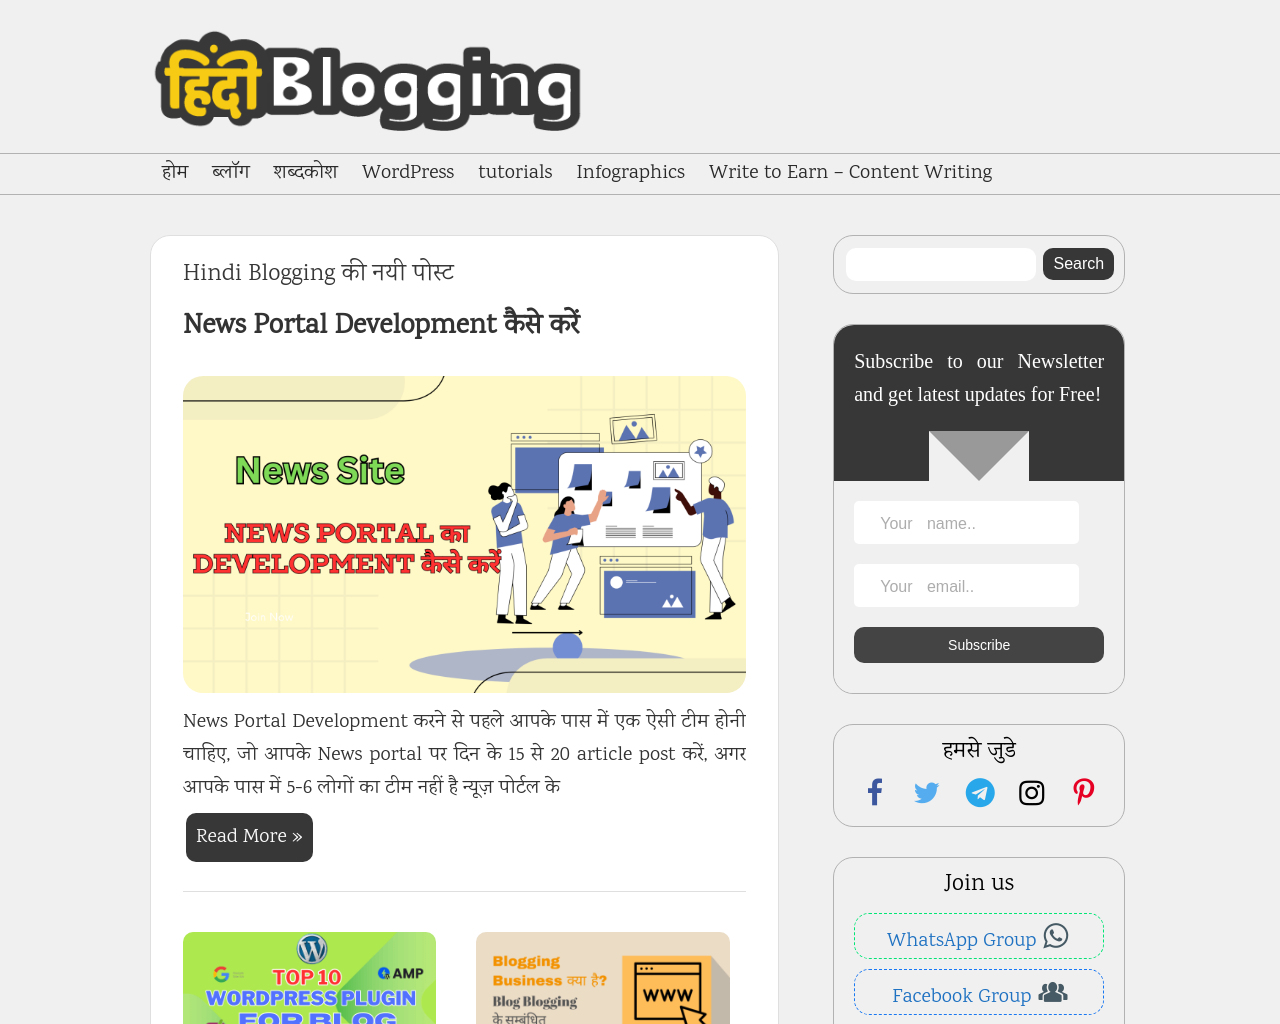 hindiblogging.com